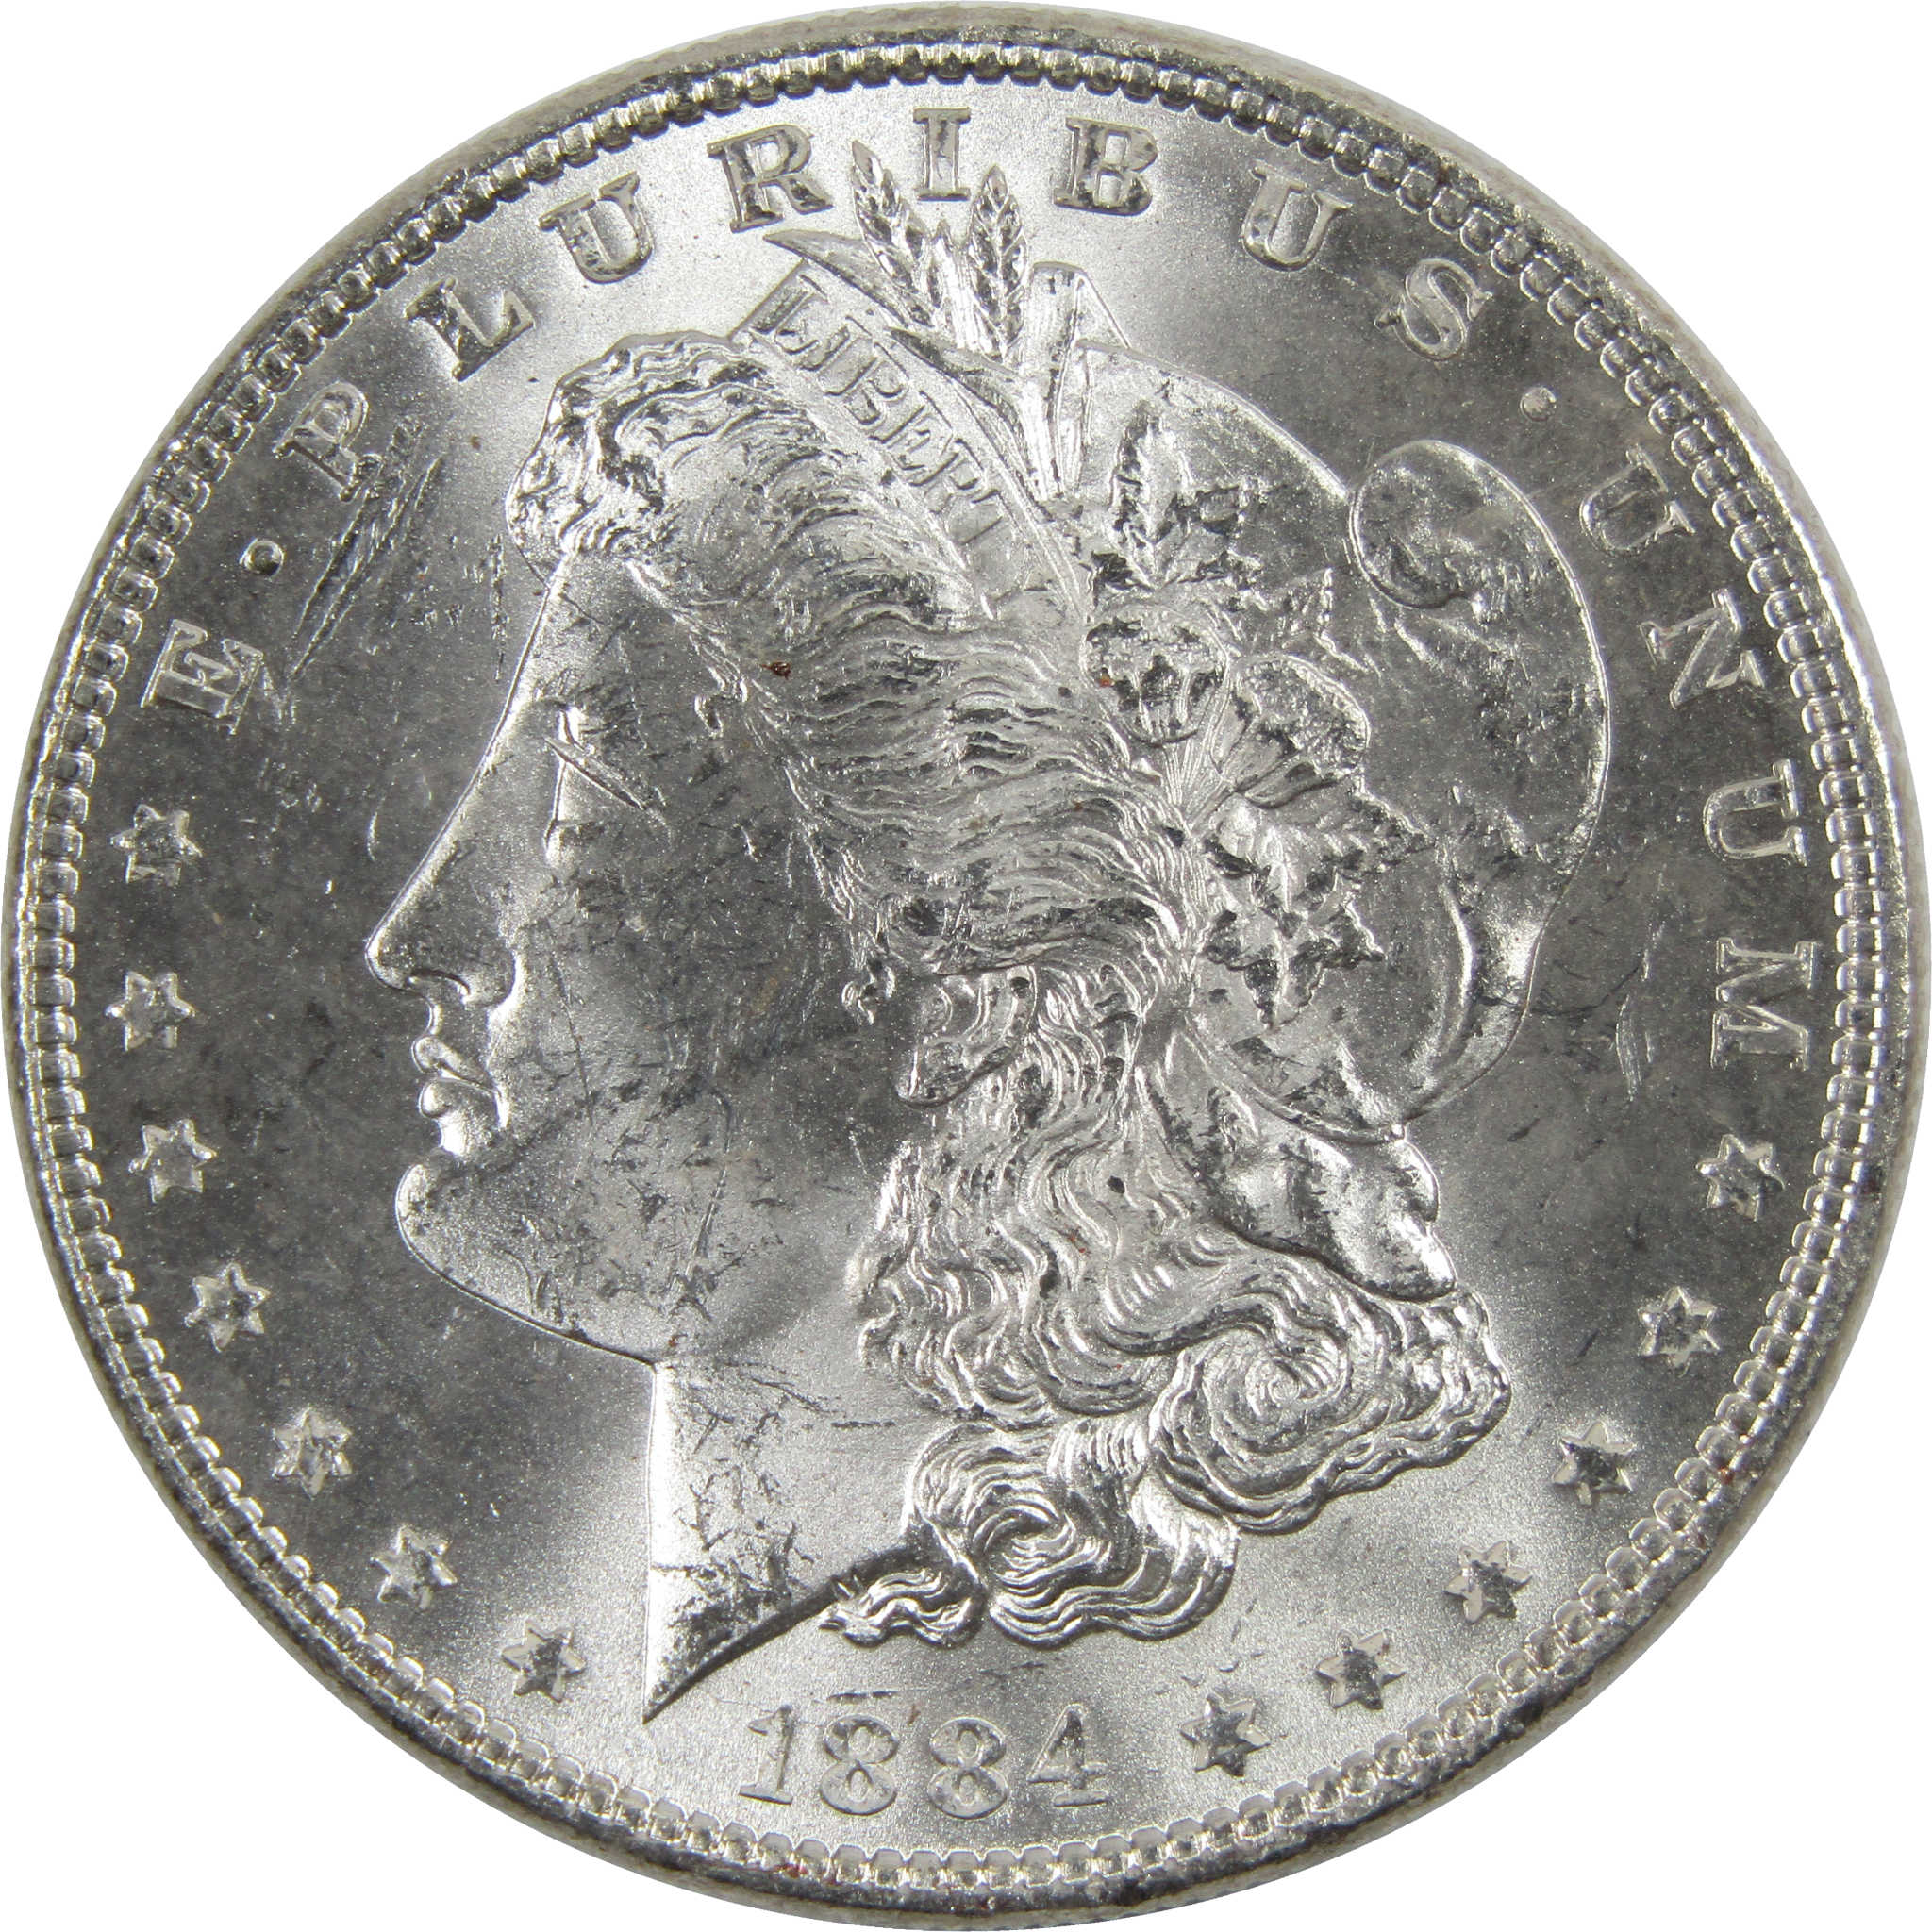 1884 Morgan Dollar BU Uncirculated 90% Silver $1 Coin SKU:I6012 - Morgan coin - Morgan silver dollar - Morgan silver dollar for sale - Profile Coins &amp; Collectibles